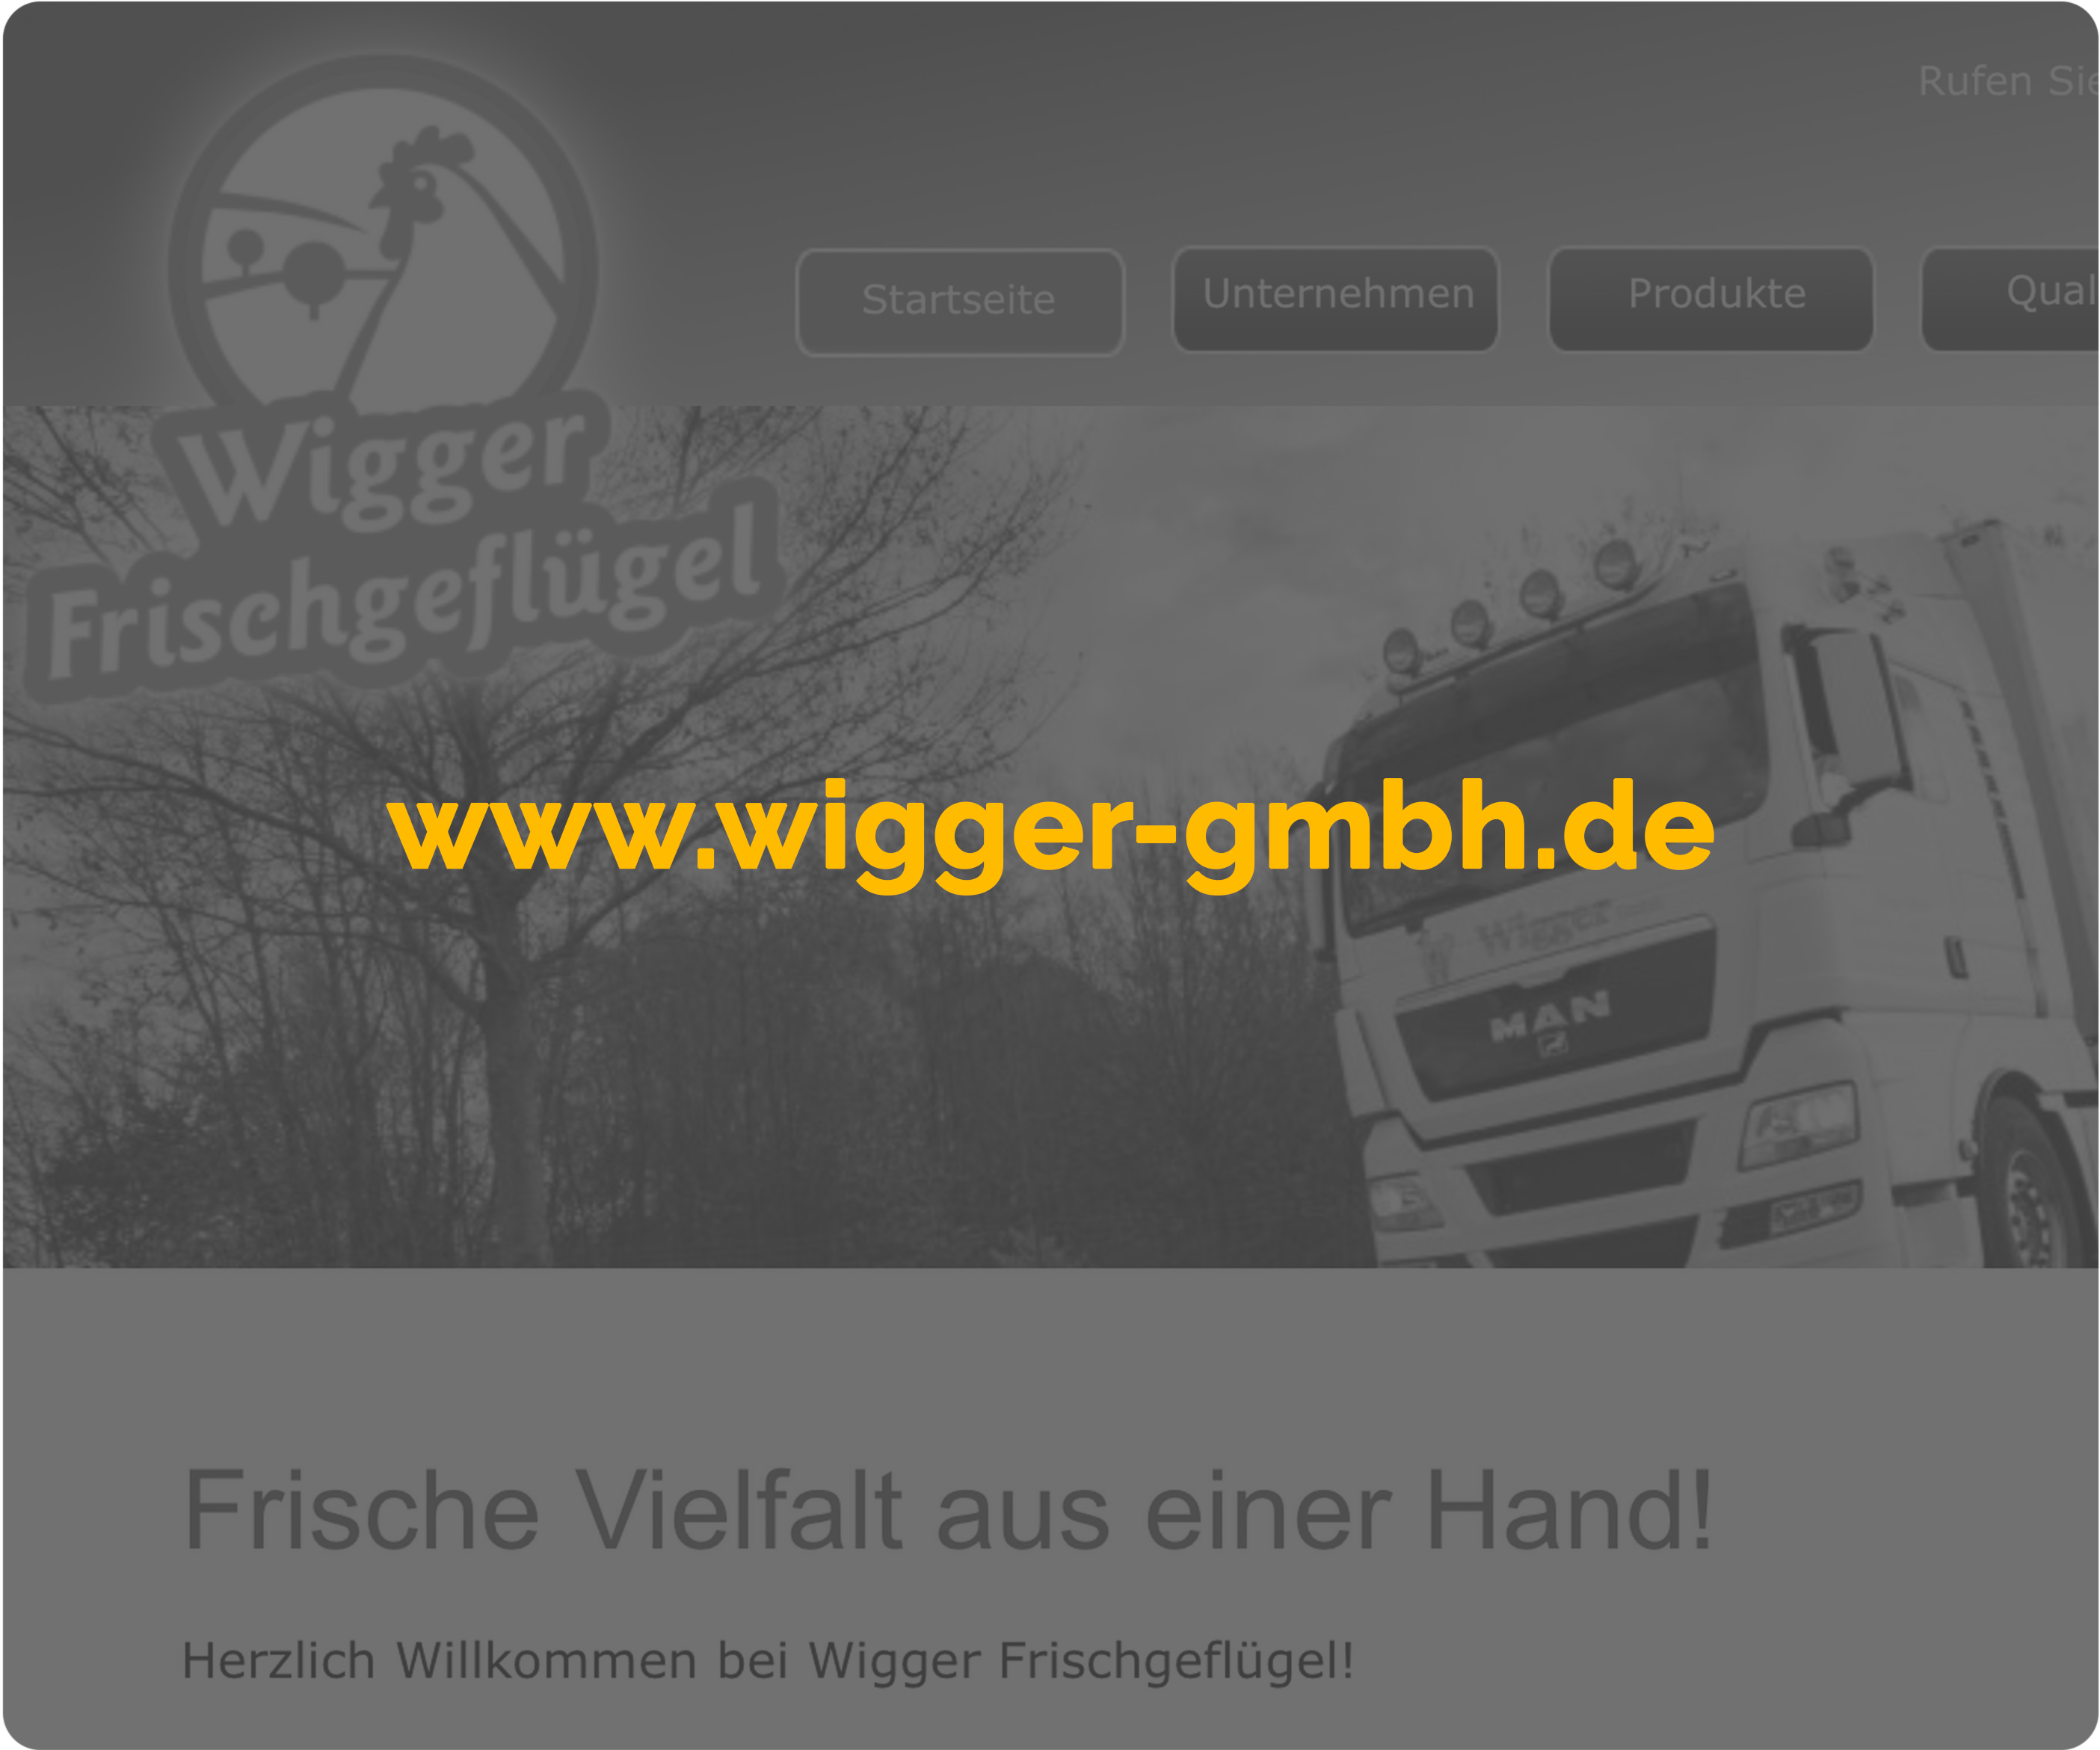 Beispielbild: www.wigger-gmbh.de